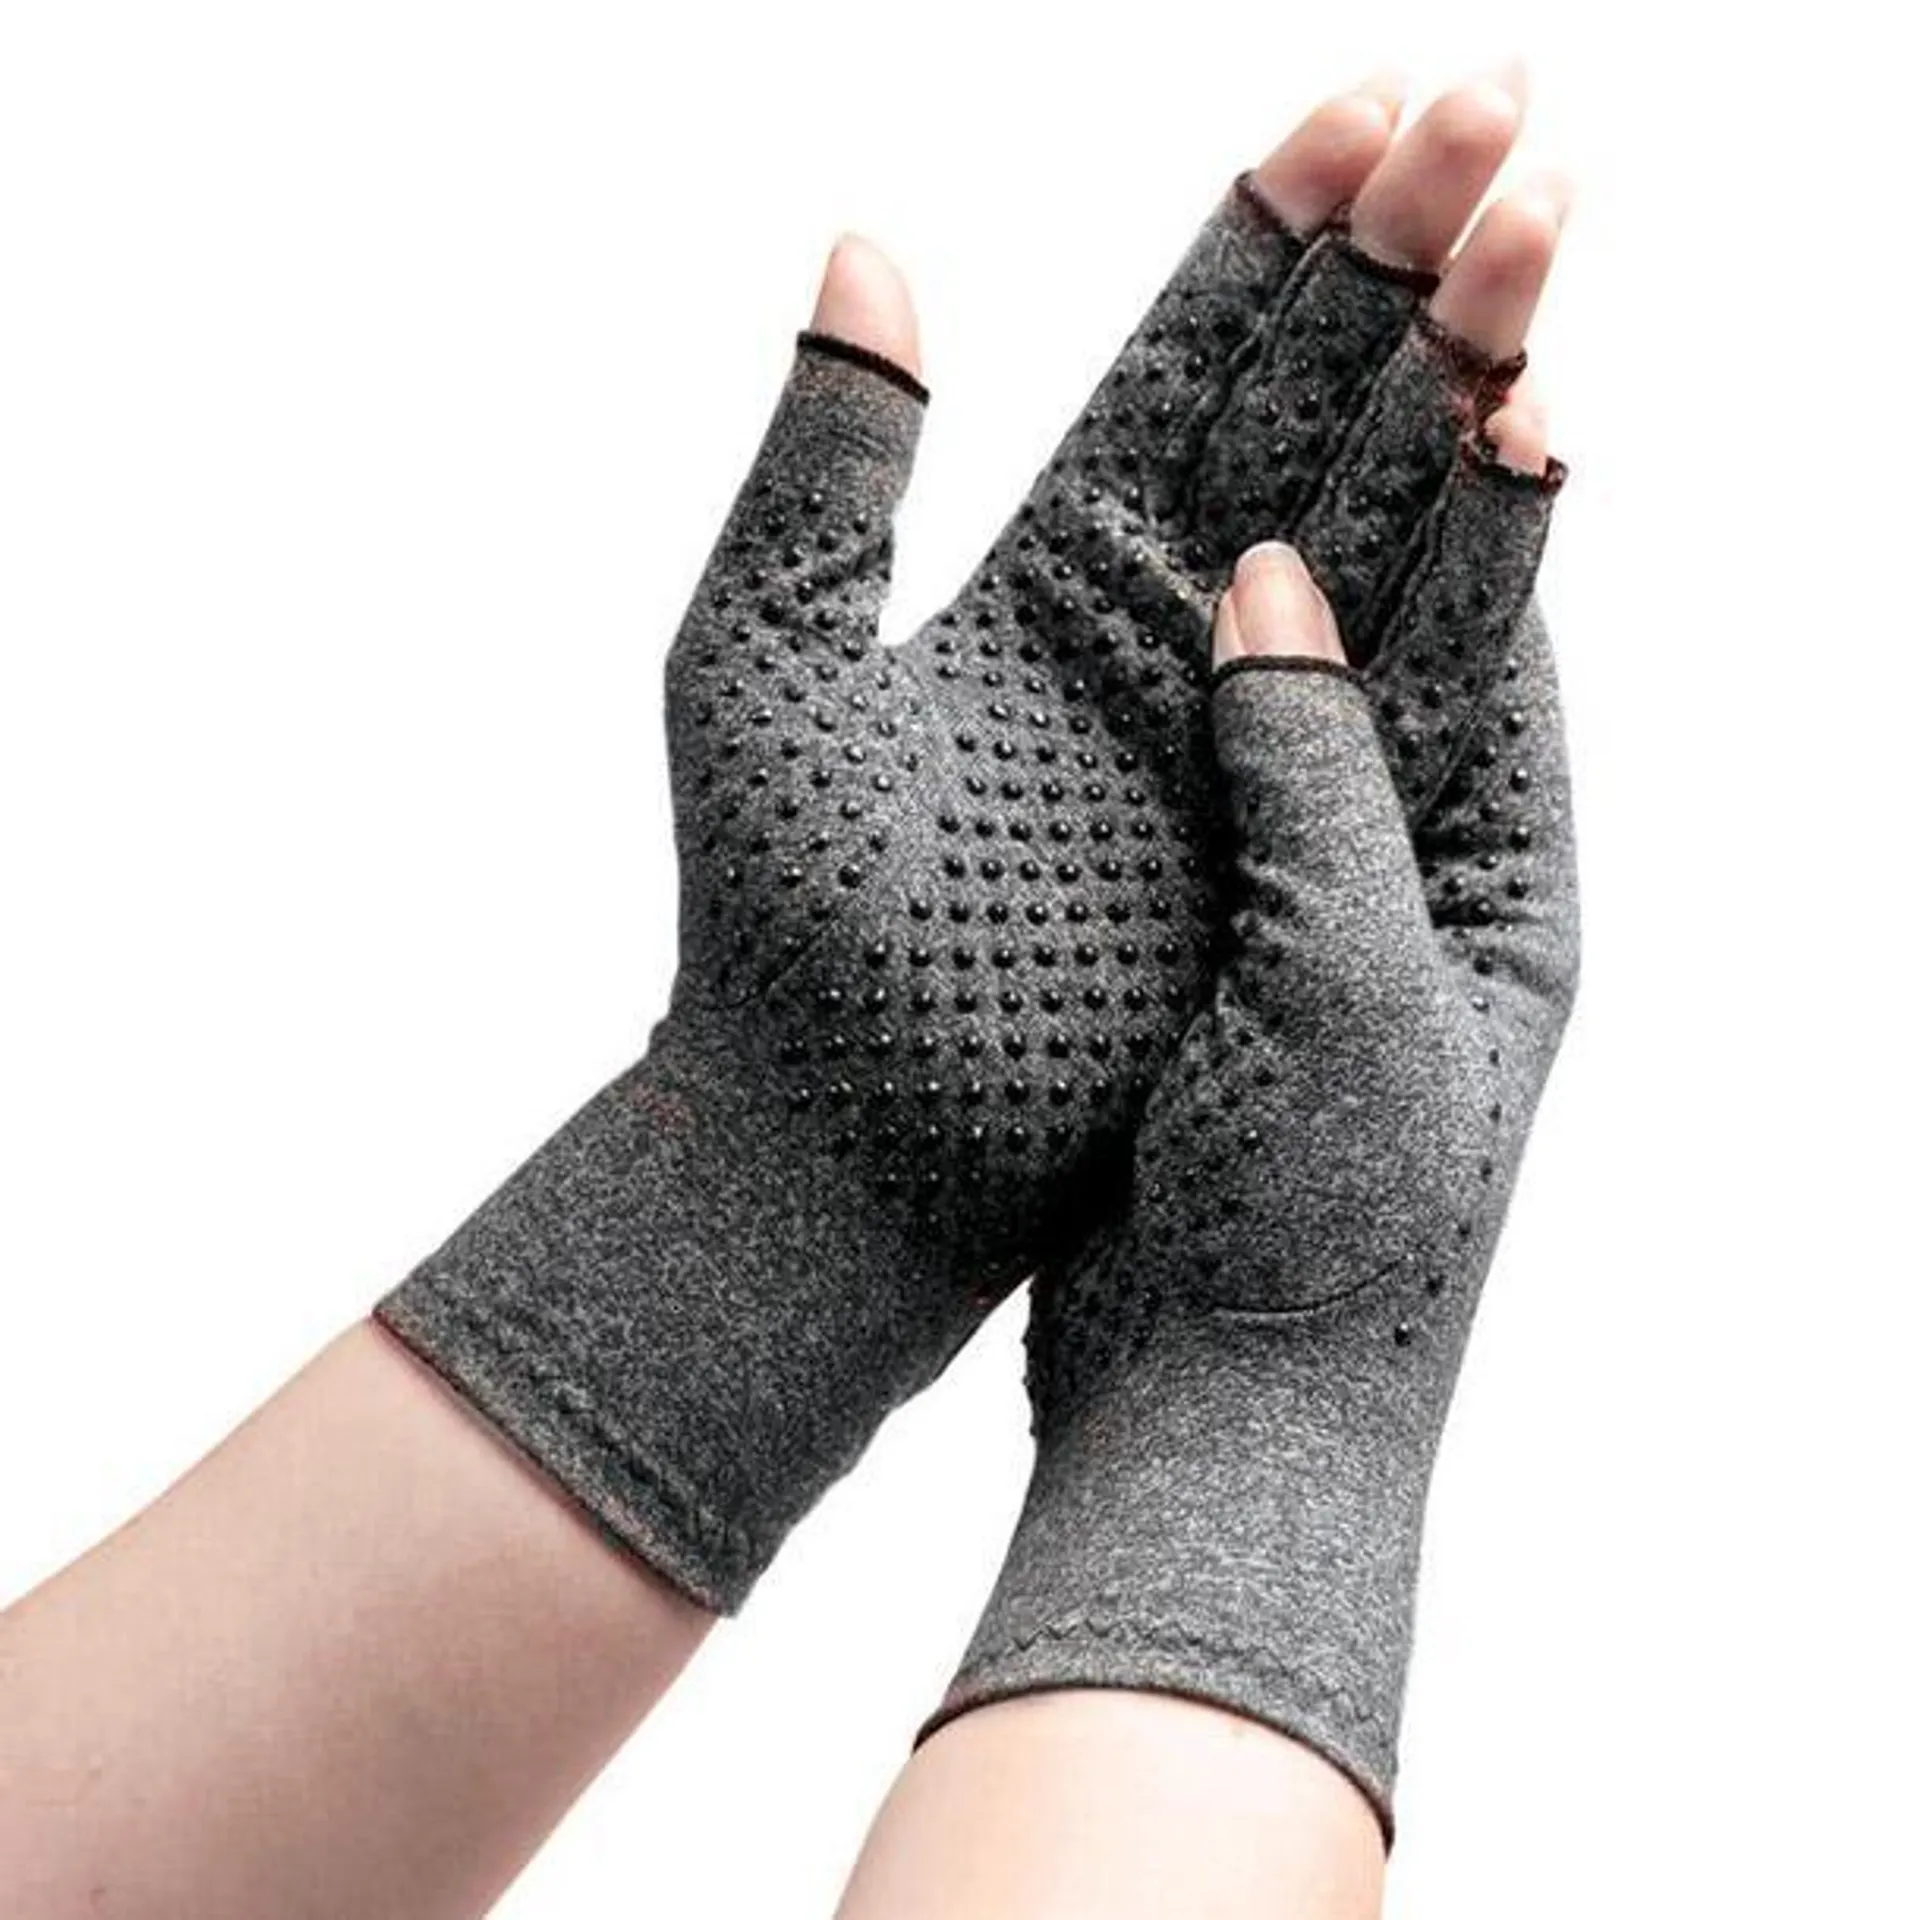 Active Arthritis Gloves (Pair)